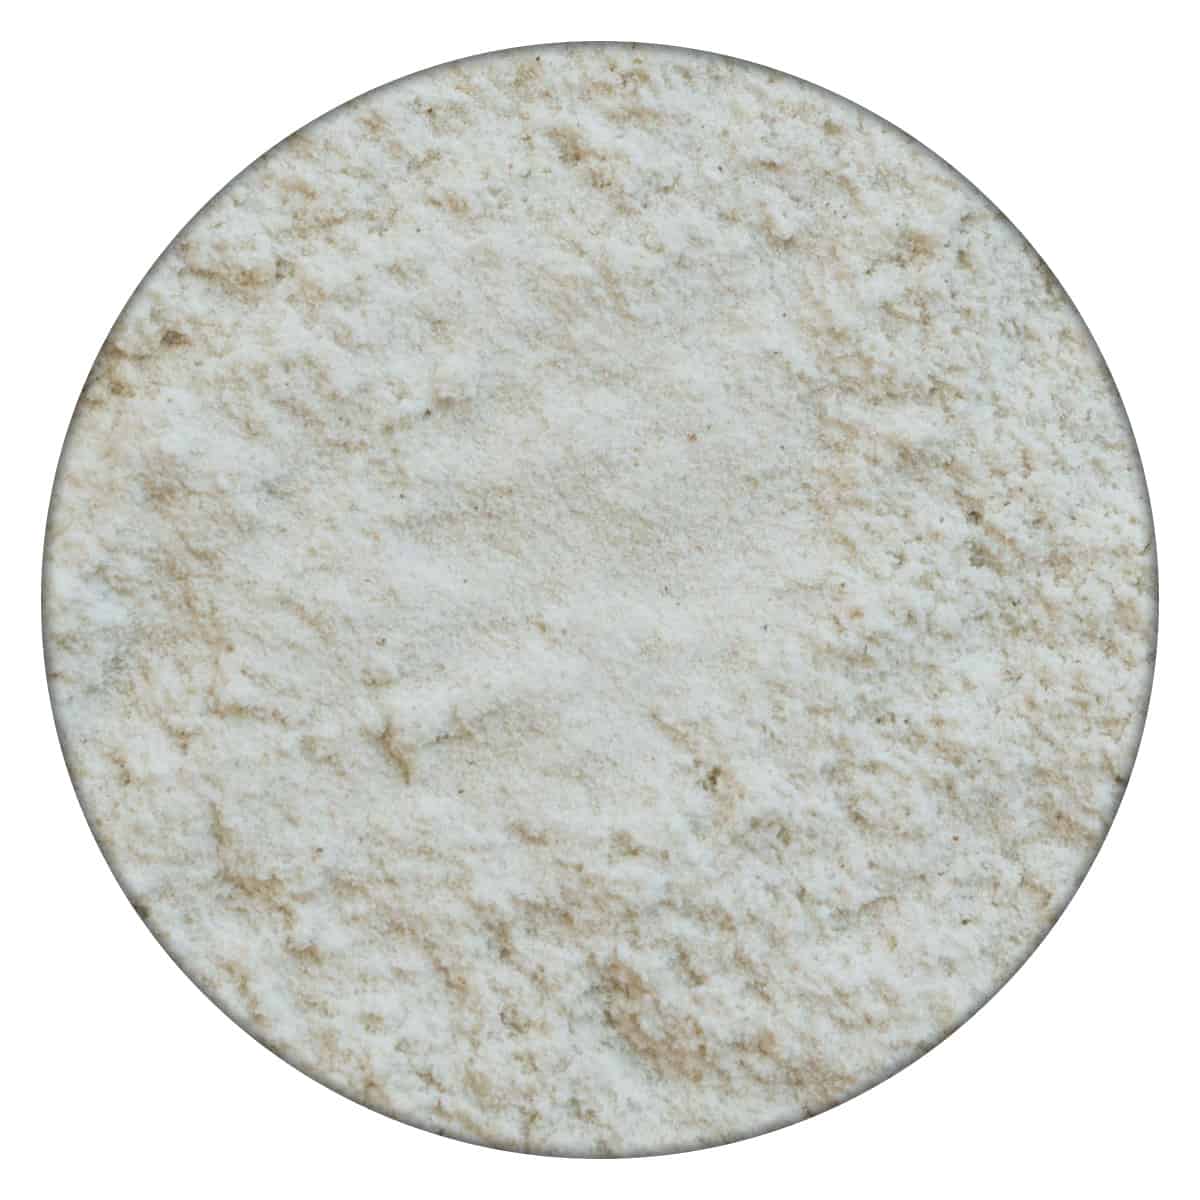 Buy IAG Foods Rice Flour - 1 kg